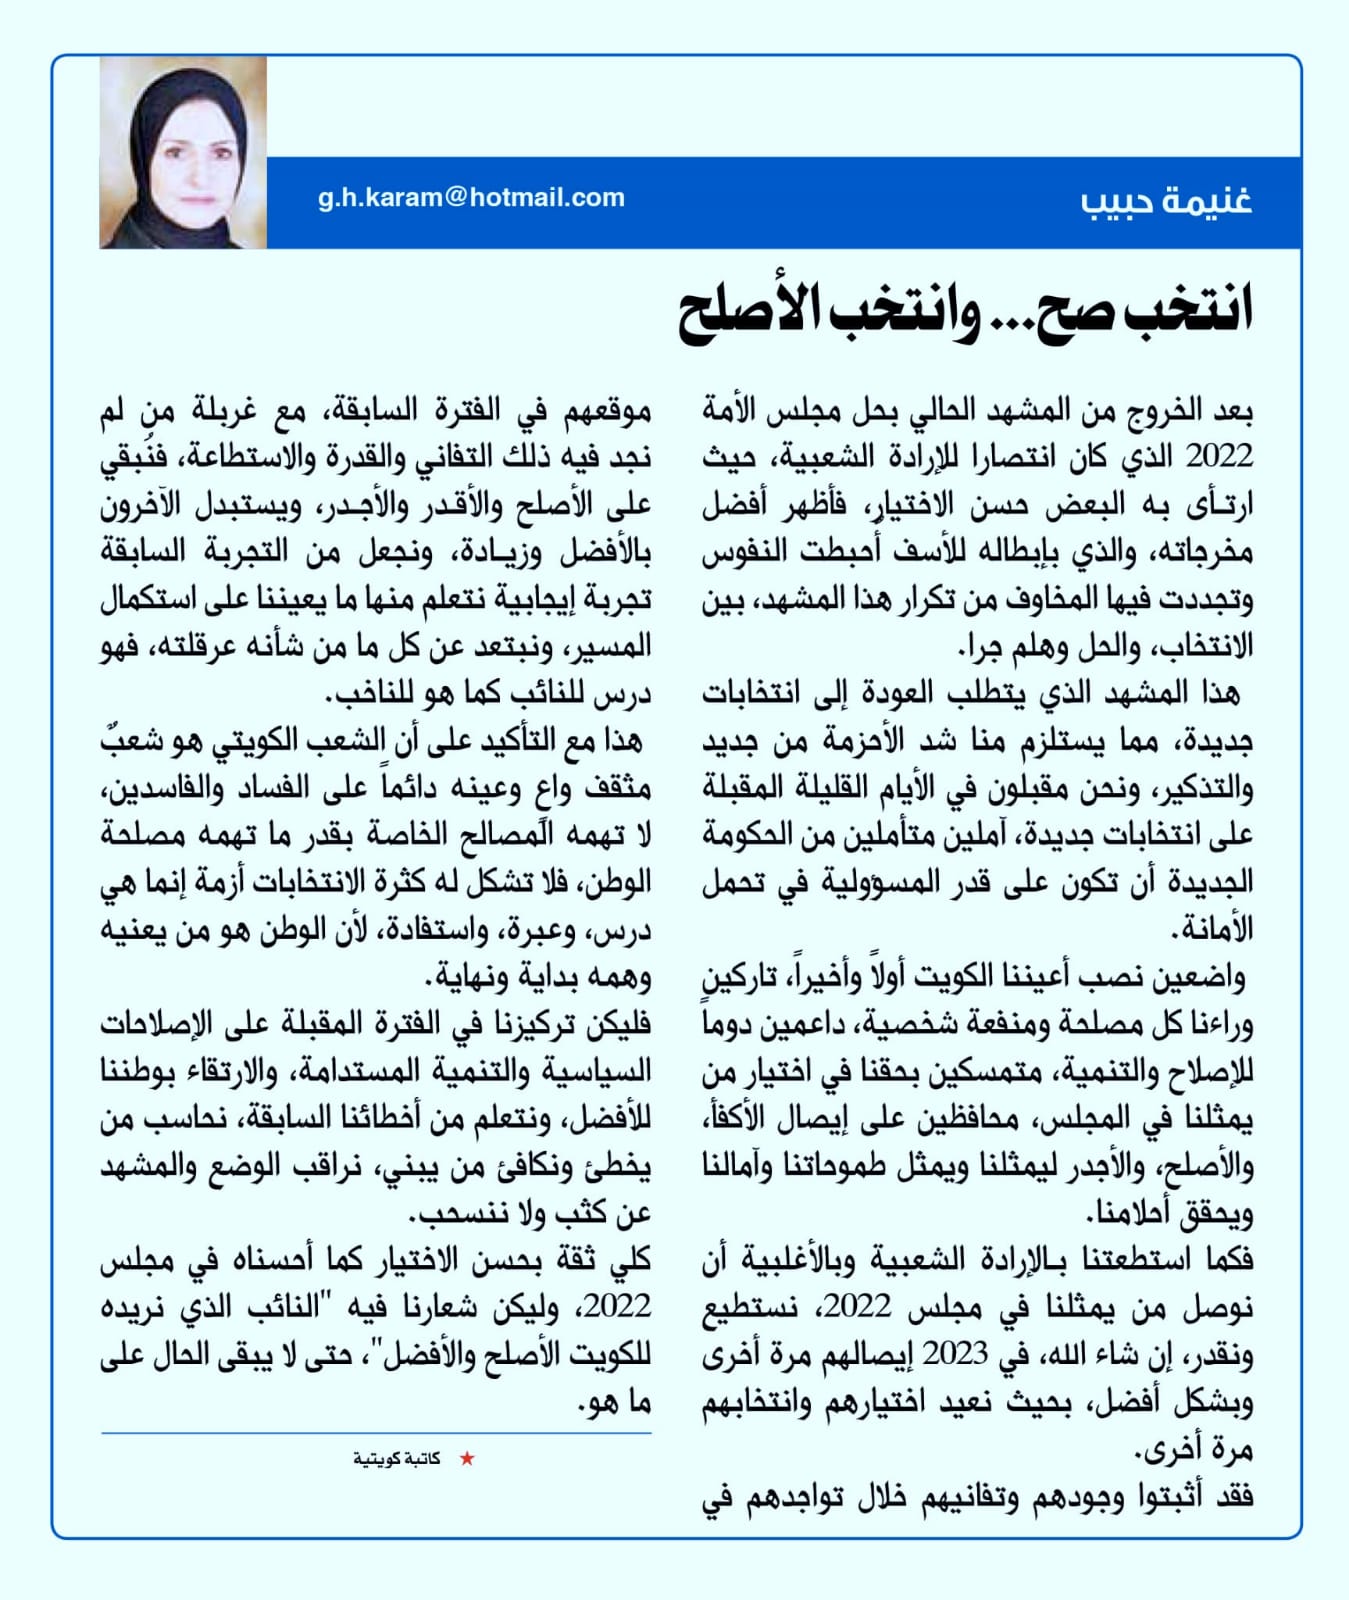 بقلم غنيمة حبيب نشر بجريدة السياسة بتاريخ ٢٤ مايو ٢٠٢٣